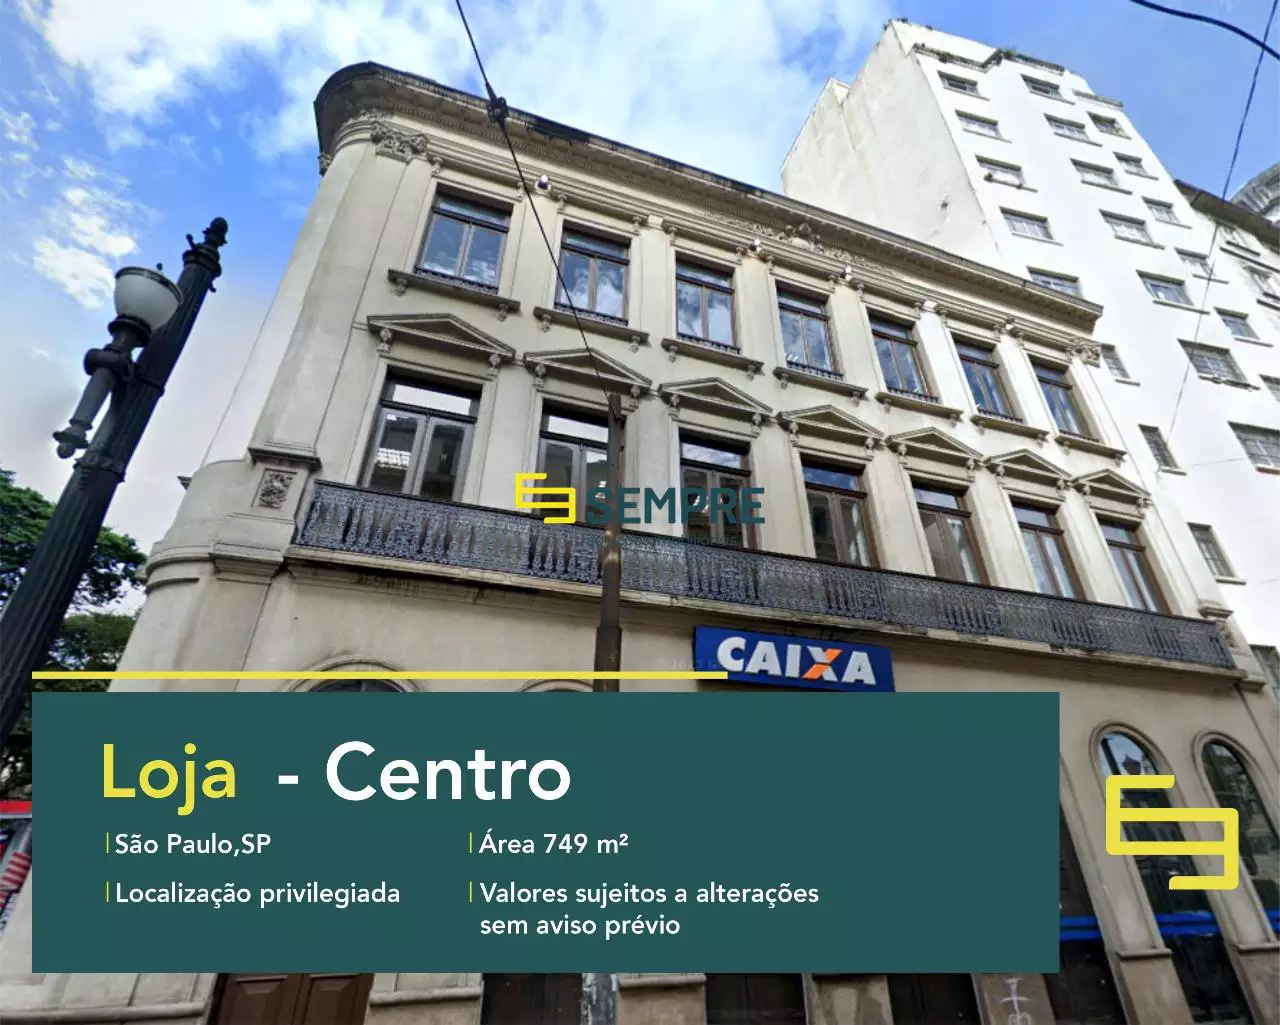 Loja para locação no Centro de São Paulo, excelente localização. O estabelecimento comercial conta, sobretudo, com área de 749 m².